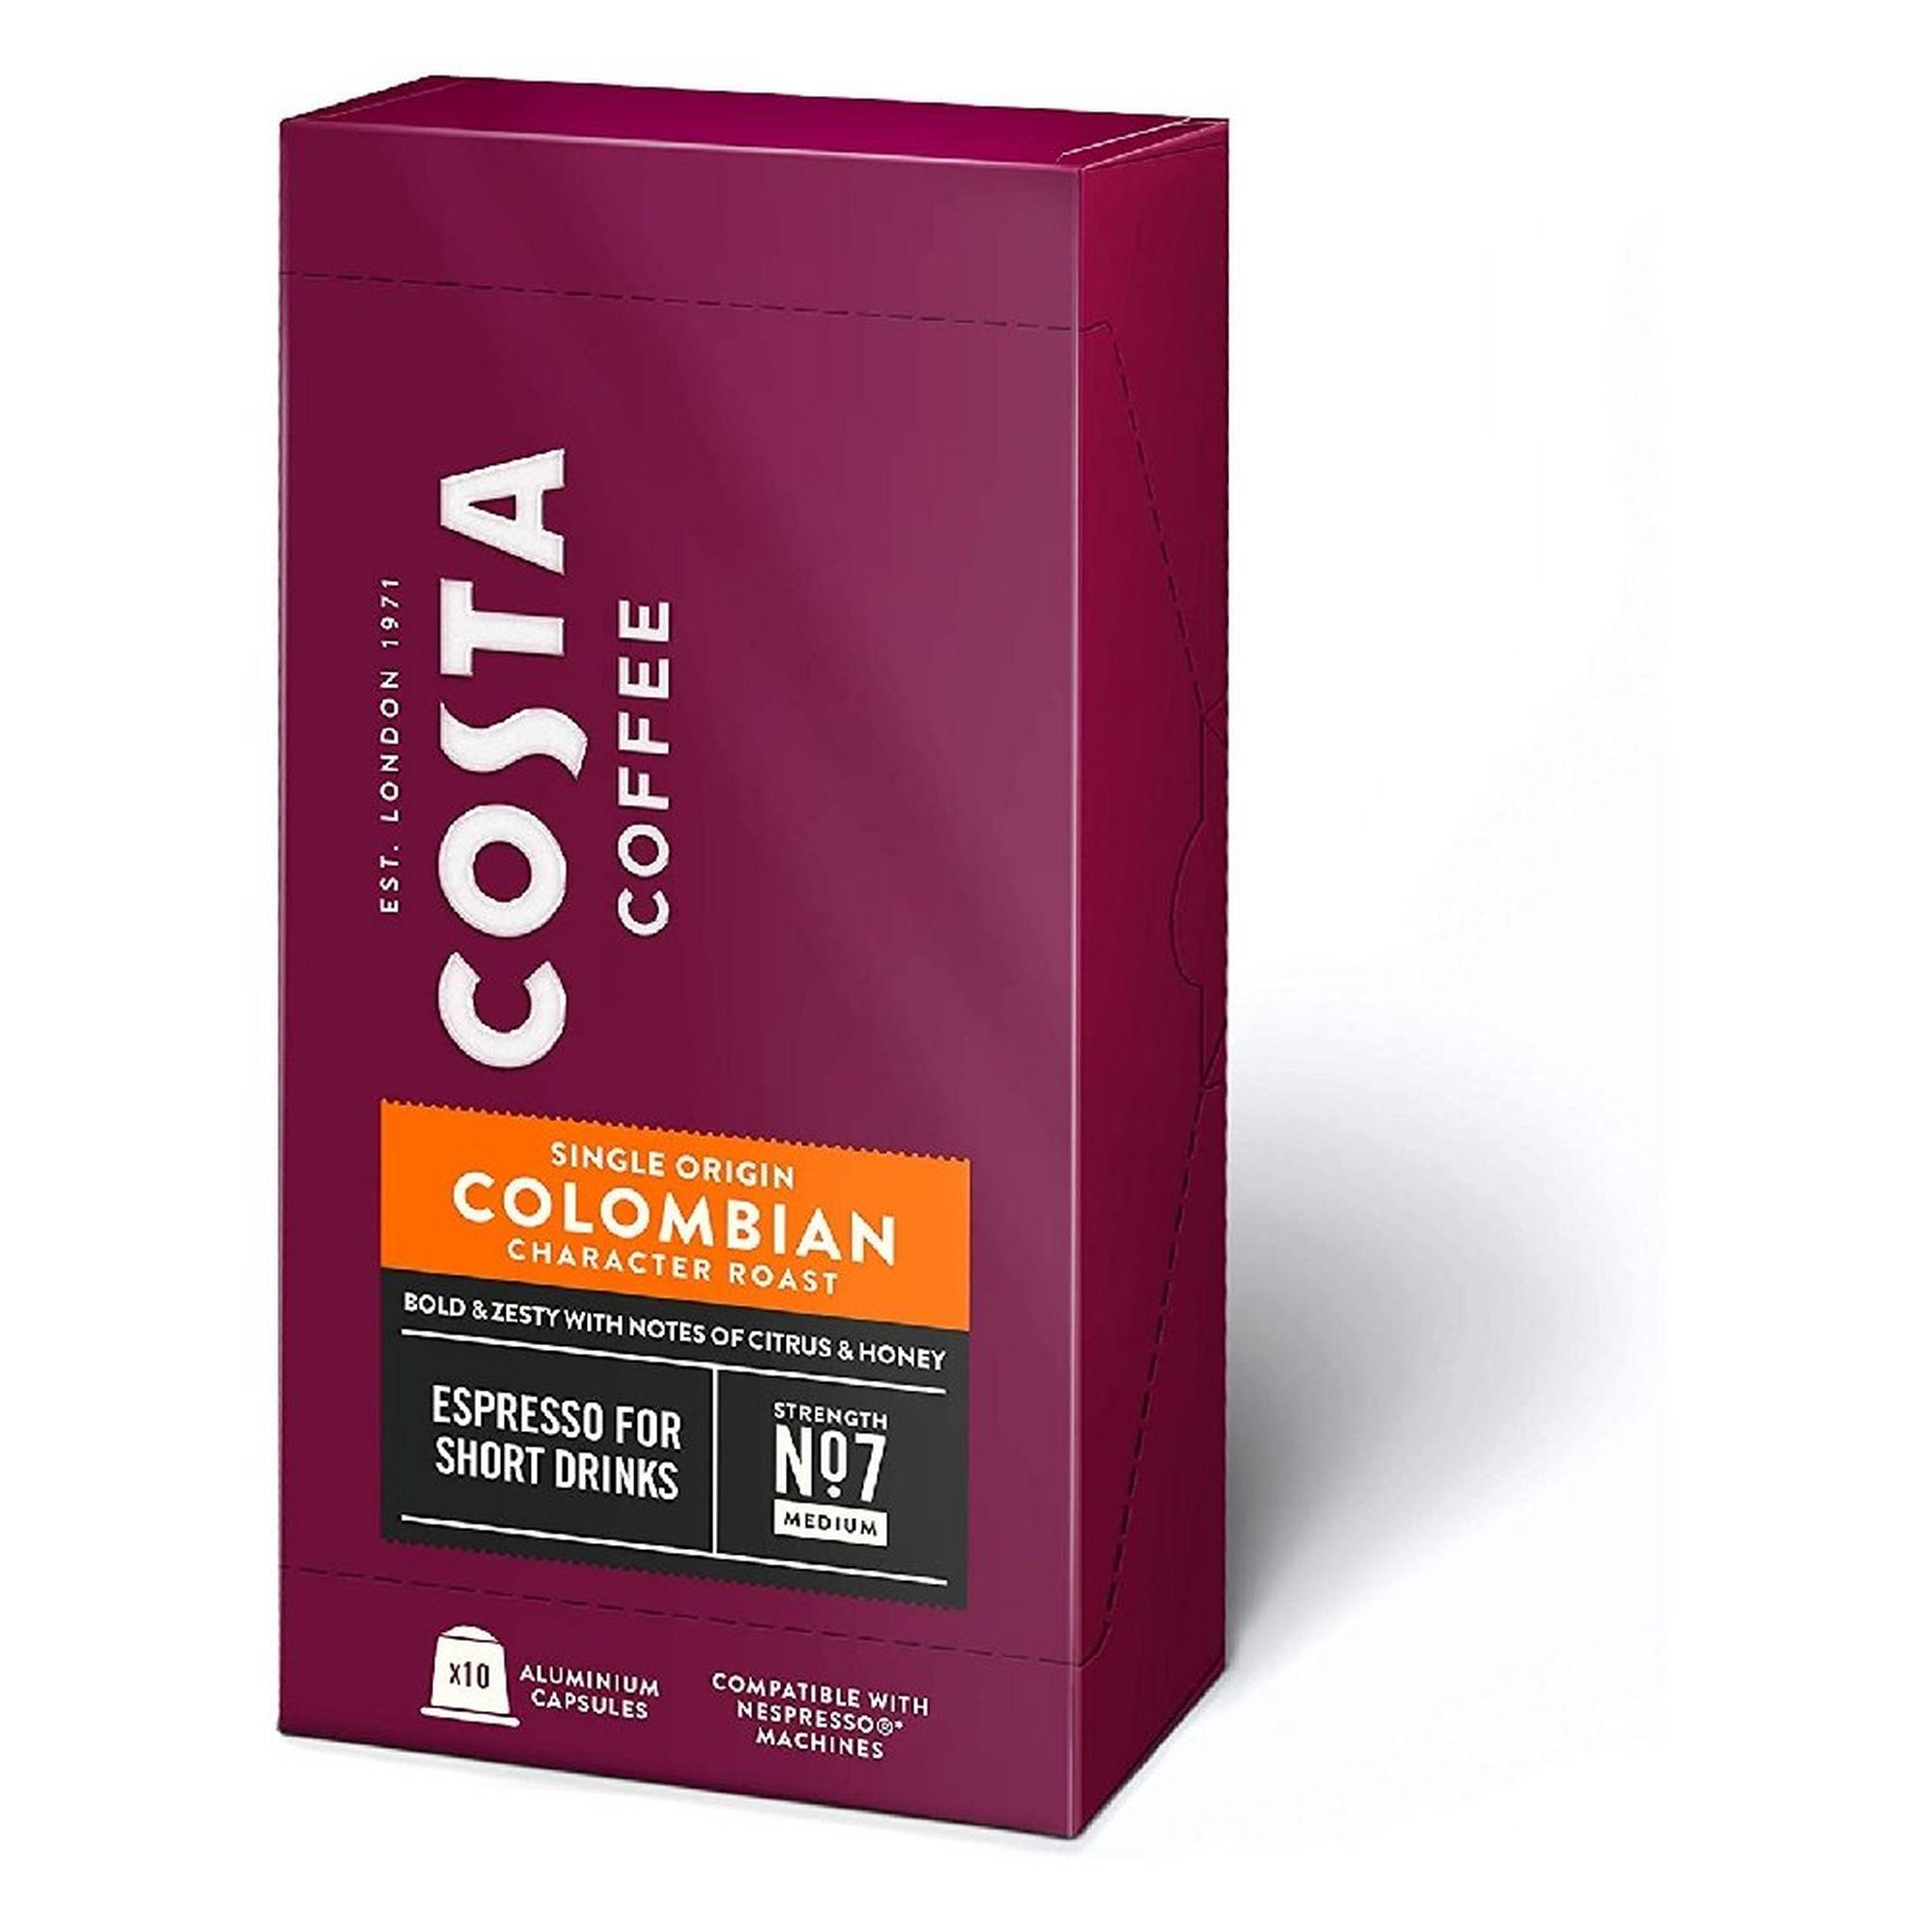 كبسولات قهوة اسبرسو كولومبيا لماكينة نسبريسو من كوستا - 10 كبسولة